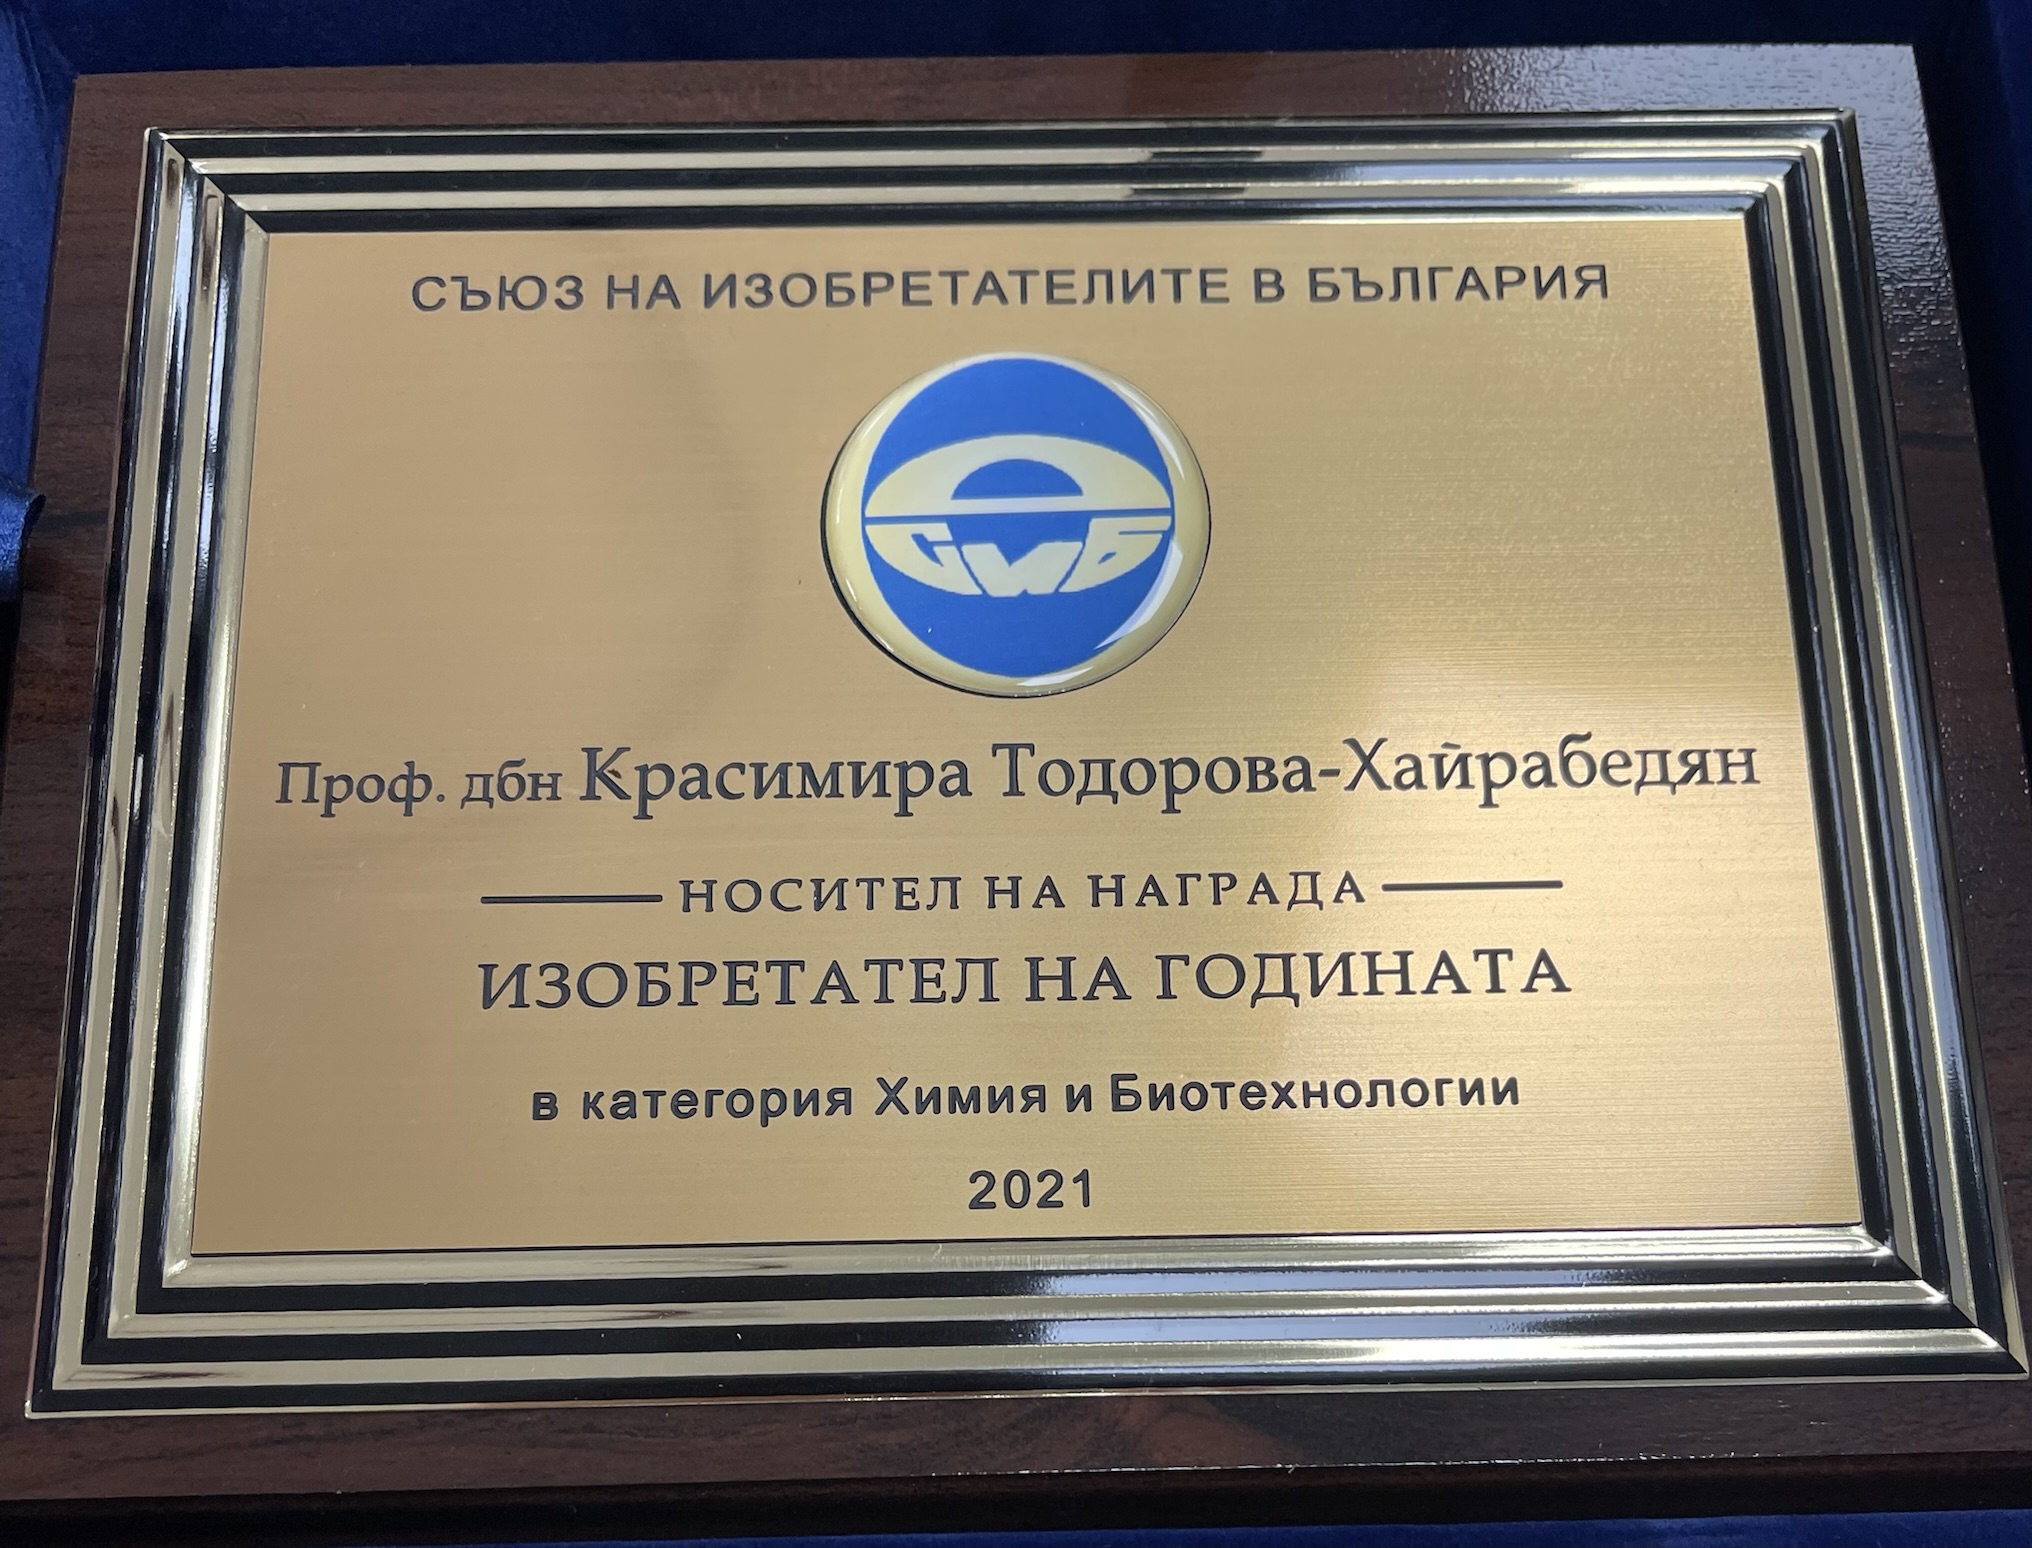 Проф. Красимира Тодорова е новия носител на наградата “Изобретател на годината 2021” в категория “Химия и Биотехнологии” на едноименния конкурс провеждан съвместно от Патентно ведомство и Съюза на изобретателите в България